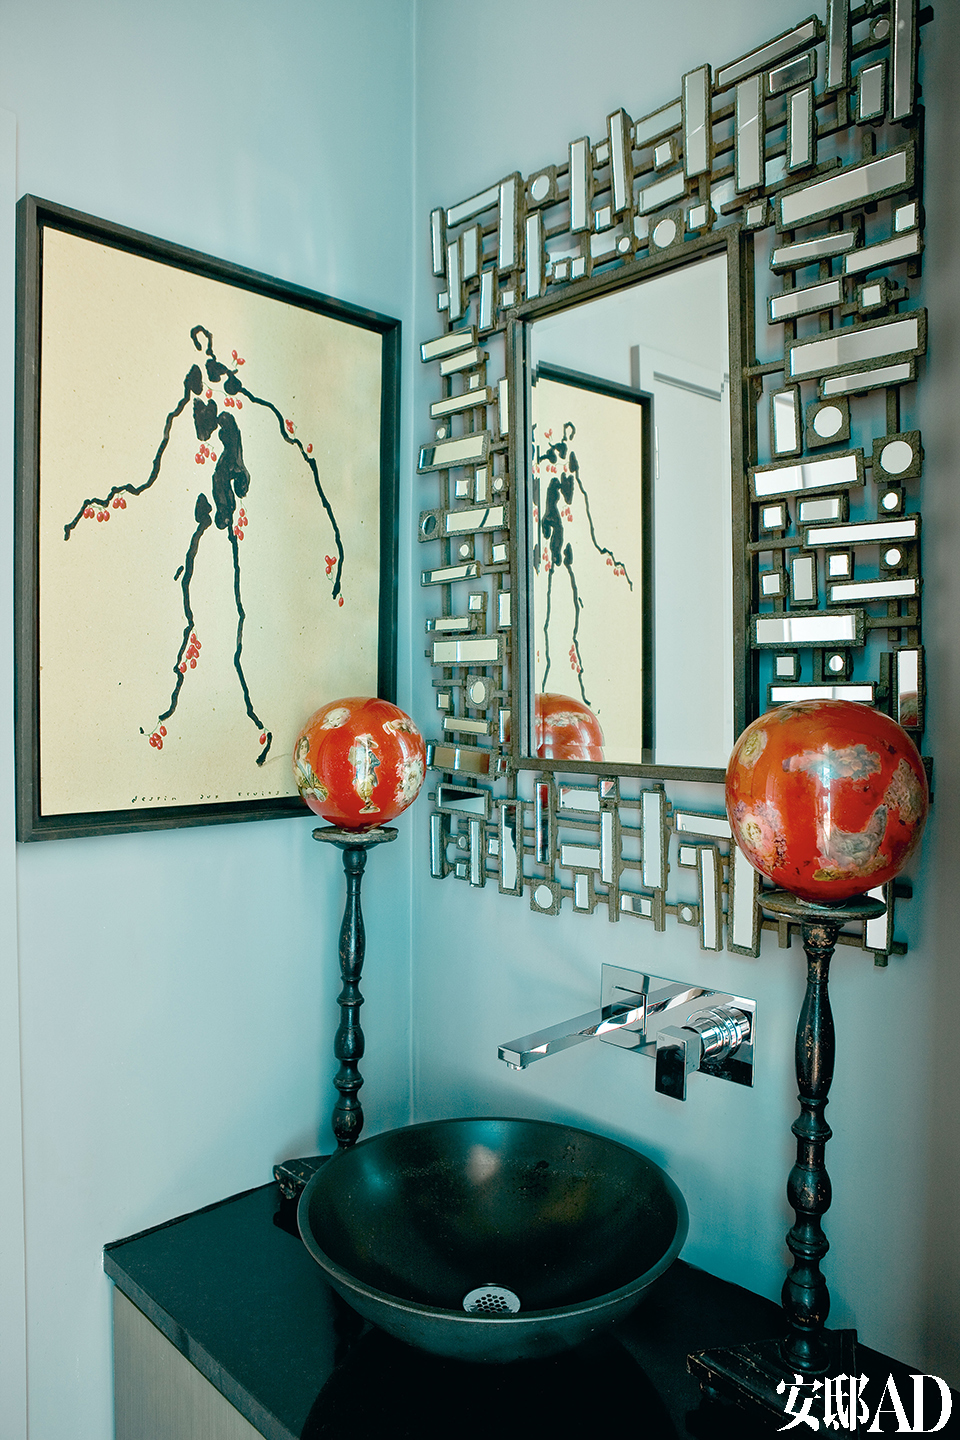 客用卫生间中的画出自Bernard Quesniaux之手，1940年代风格的装饰镜来自Asiatides。顶着两个红球的木架其实是拿破仑三世风格的假发托，可能在当时的剧院中使用过。